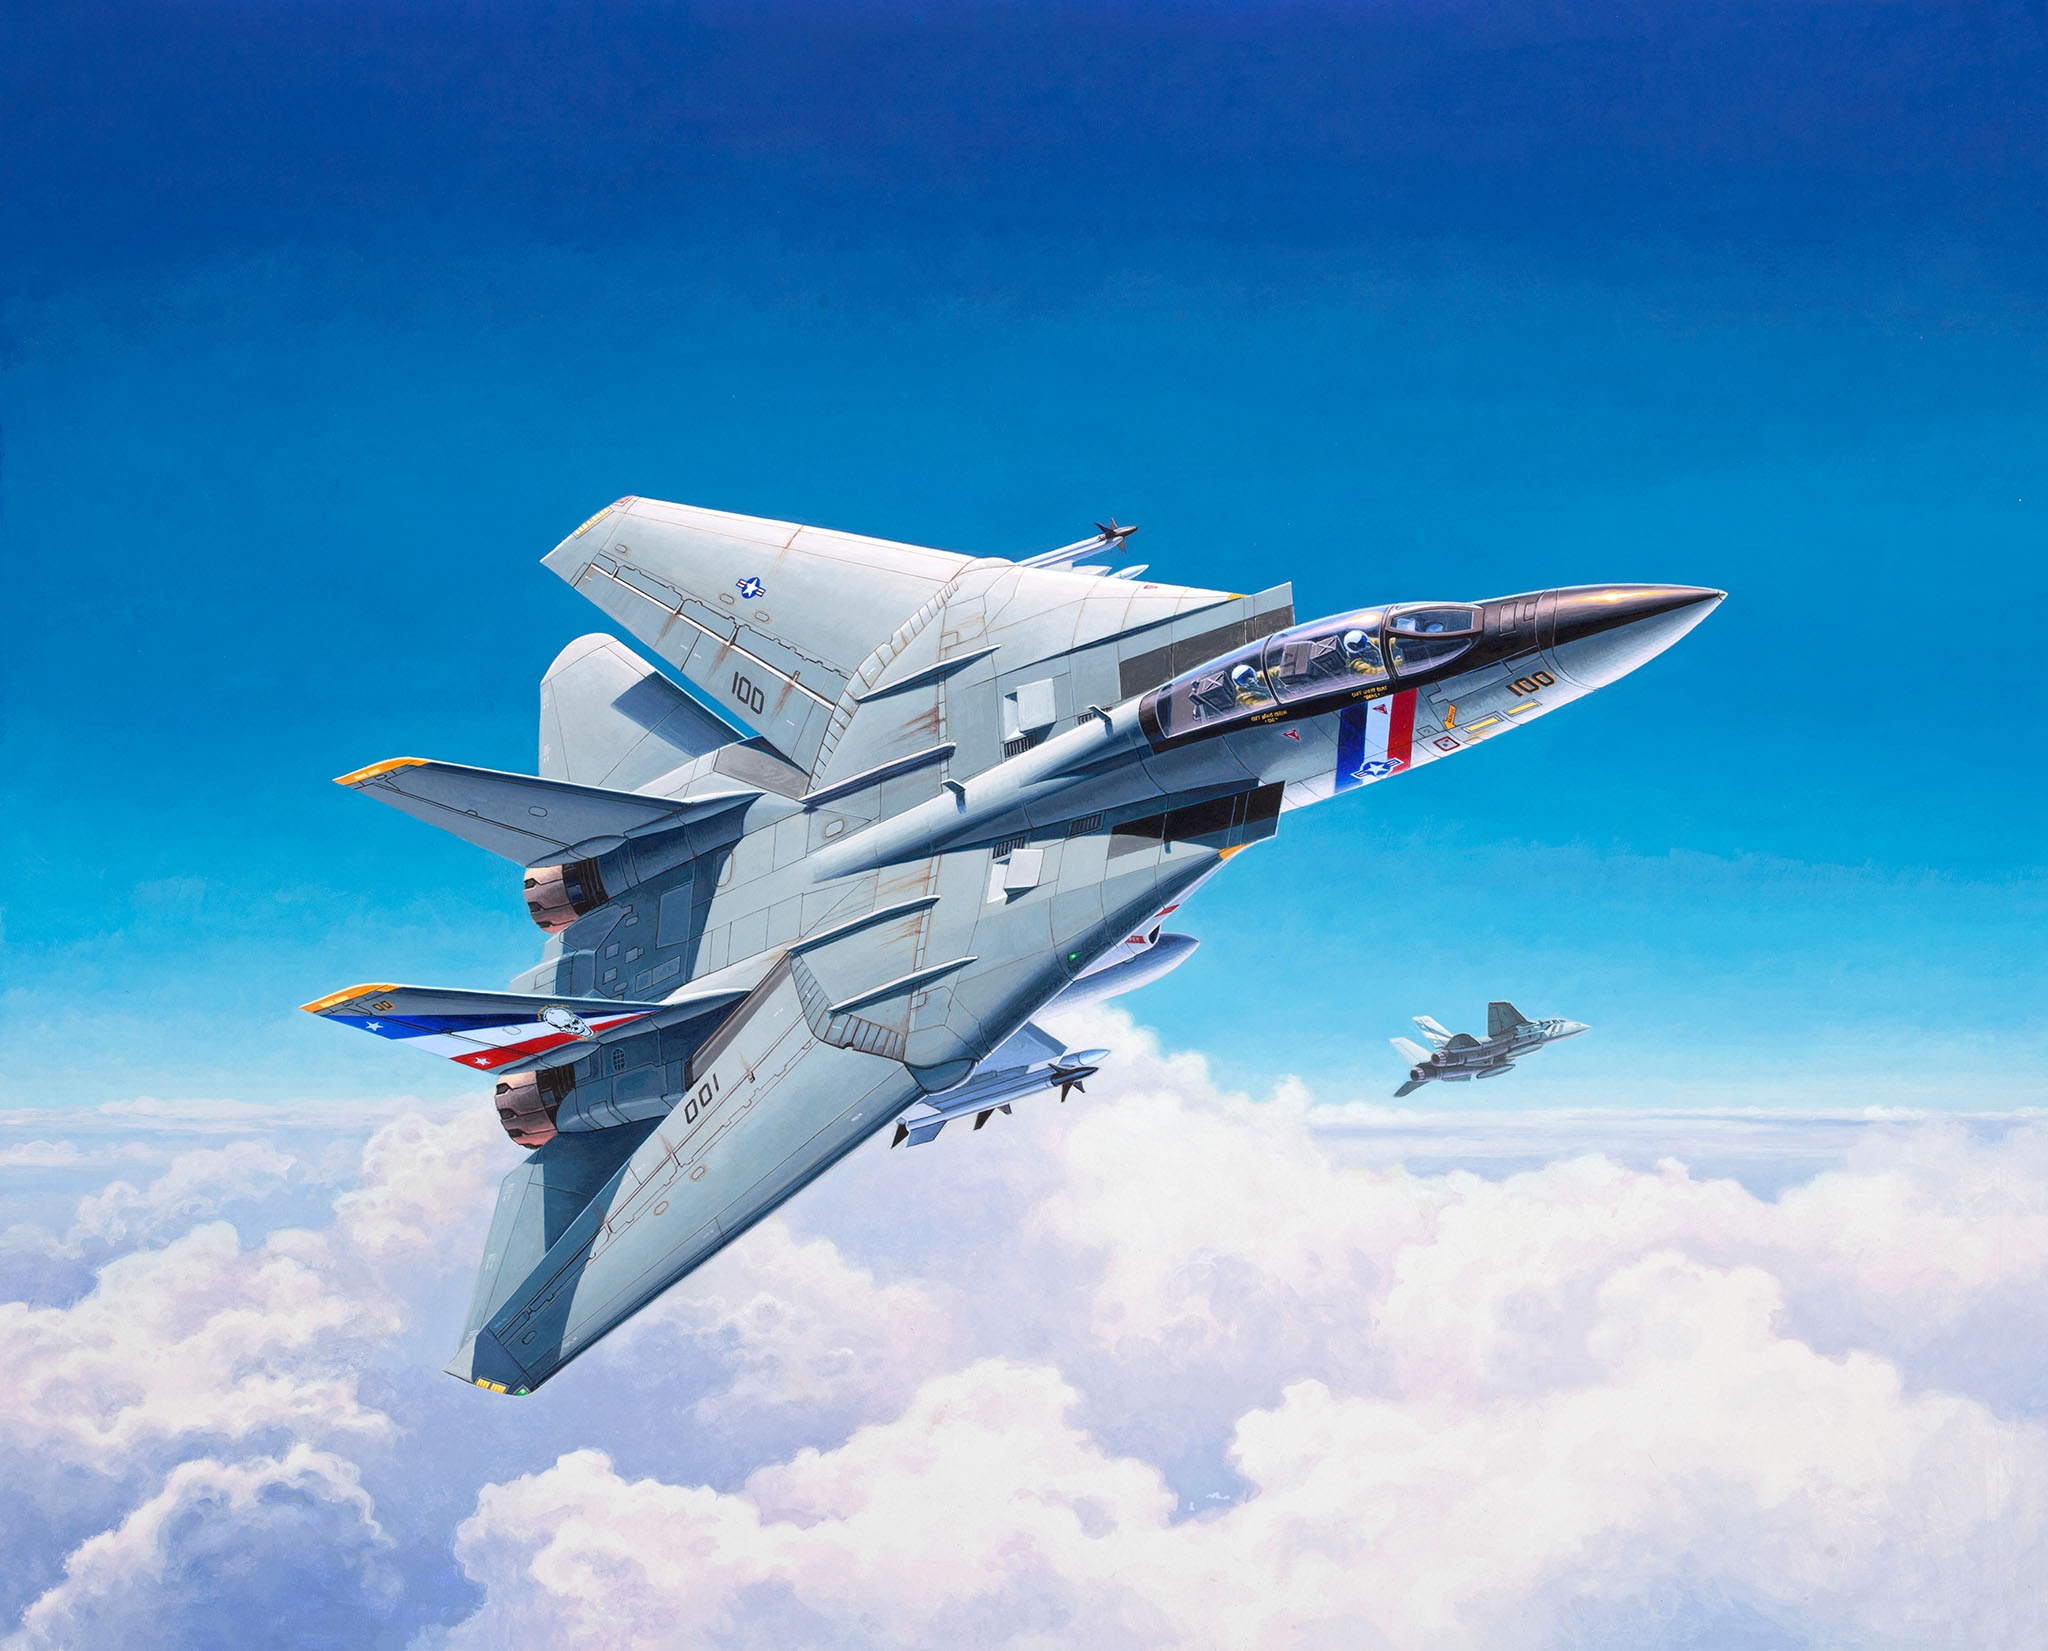 Grumman F-14 Tomcat HD Wallpaper | Background Image | 2048x1651 | ID